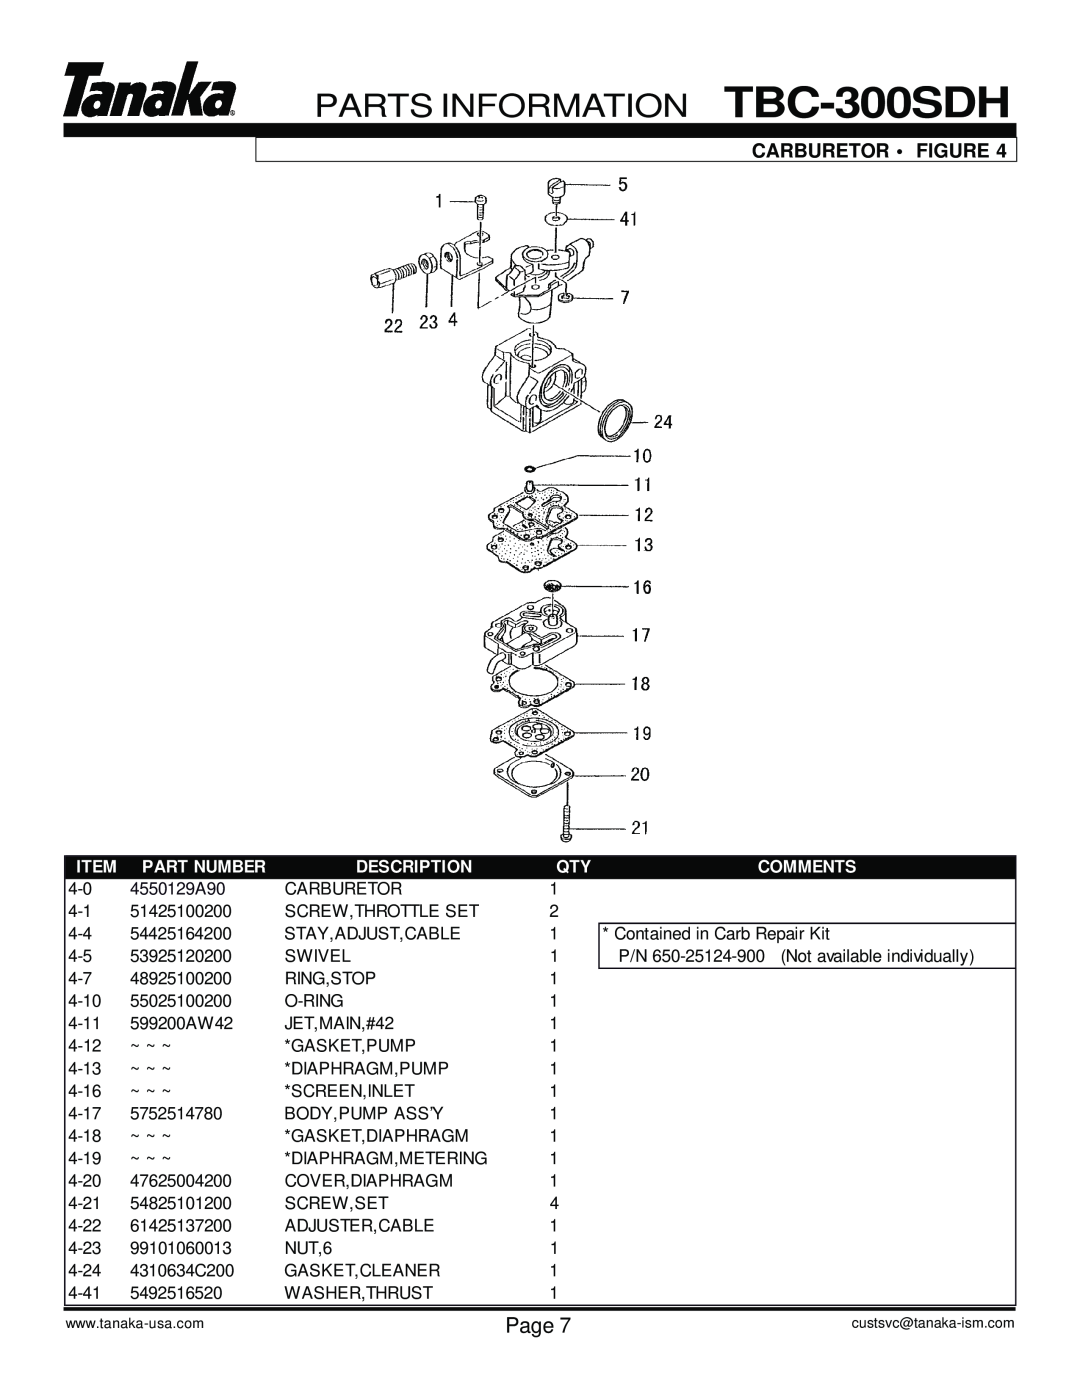 Tanaka manual PARTS INFORMATION TBC-300SDH, Carburetor Figure, Page, Part Number, Description, Comments, 4550129A90 